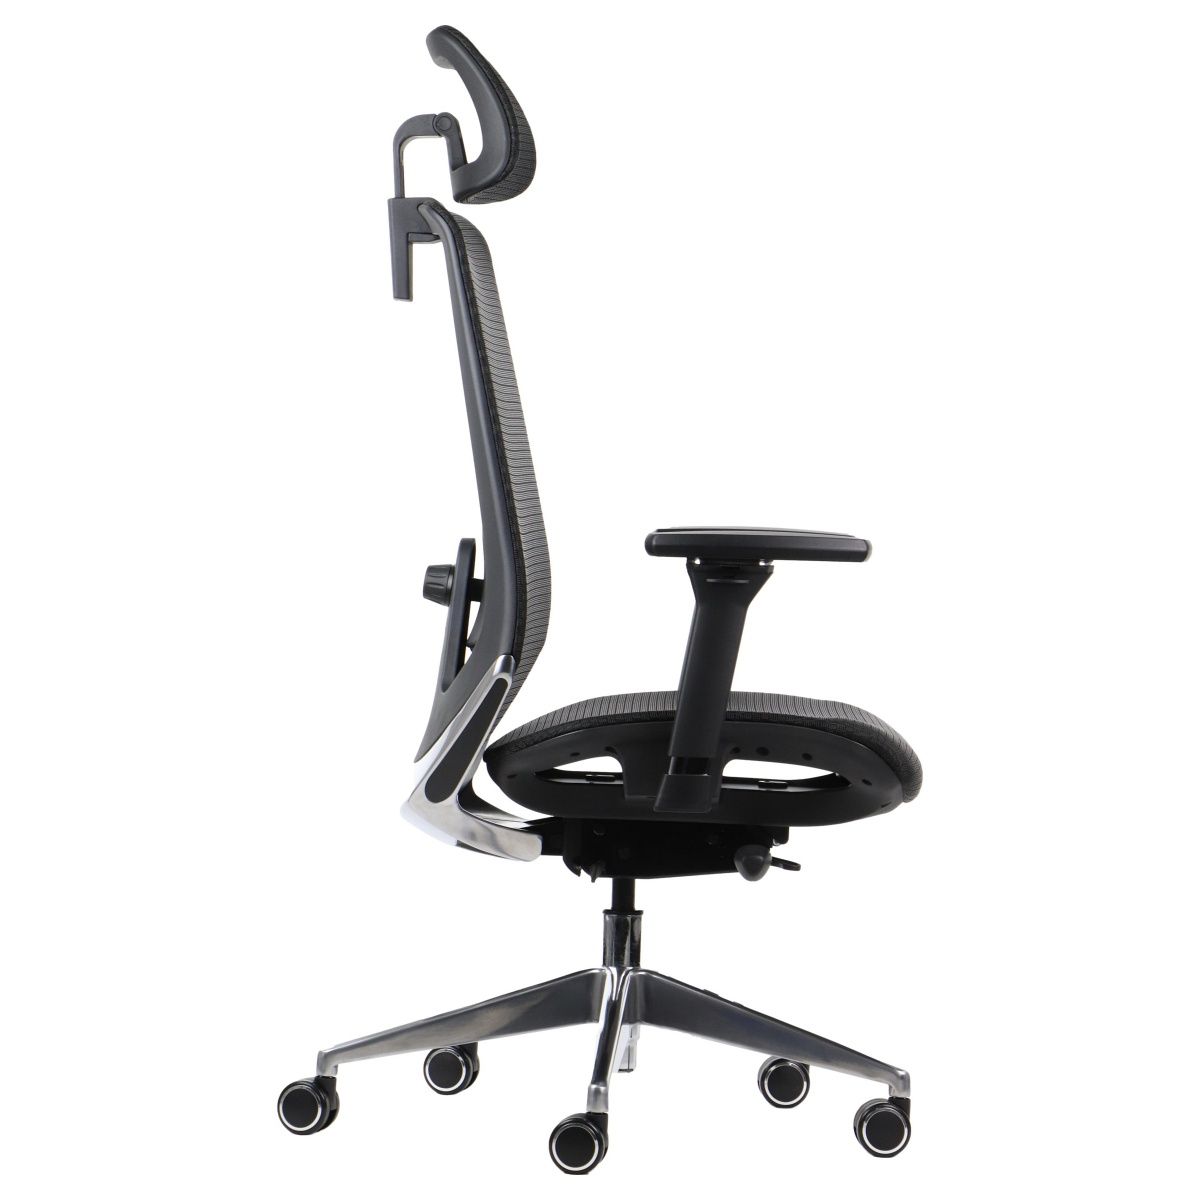 Fotel biurowy DITTER - elegancki fotel do gabinetu wyposażony w ergonomiczne regulacje. Sprawdż sam